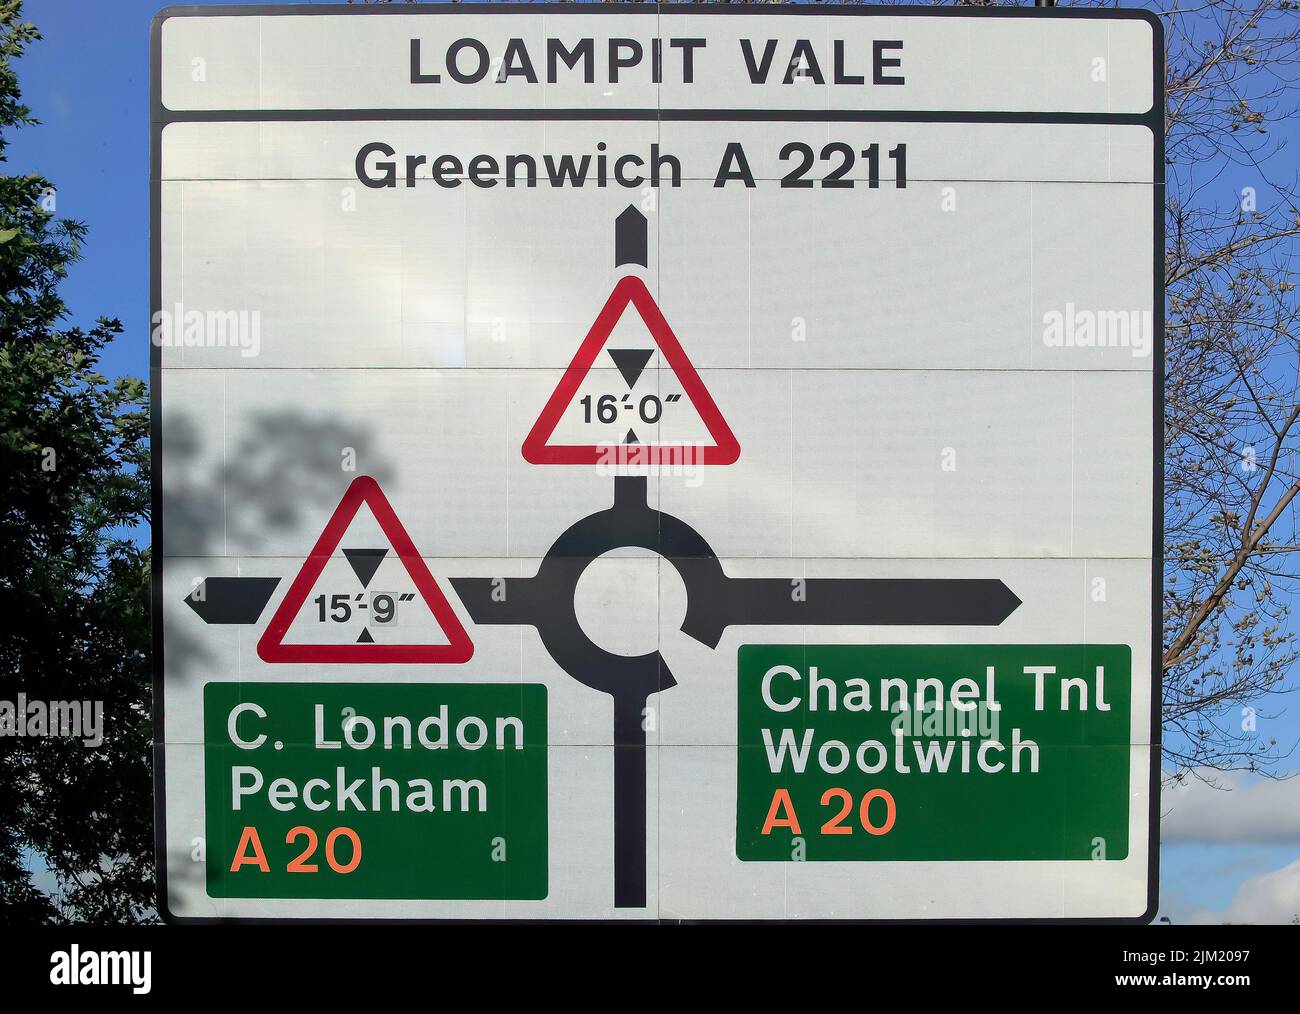 Primer plano de una señal de carretera, en Molesworth Street, mirando hacia Loampit Vale, mostrando el antiguo trazado de la carretera en la rotonda de Lewisham. Foto de stock